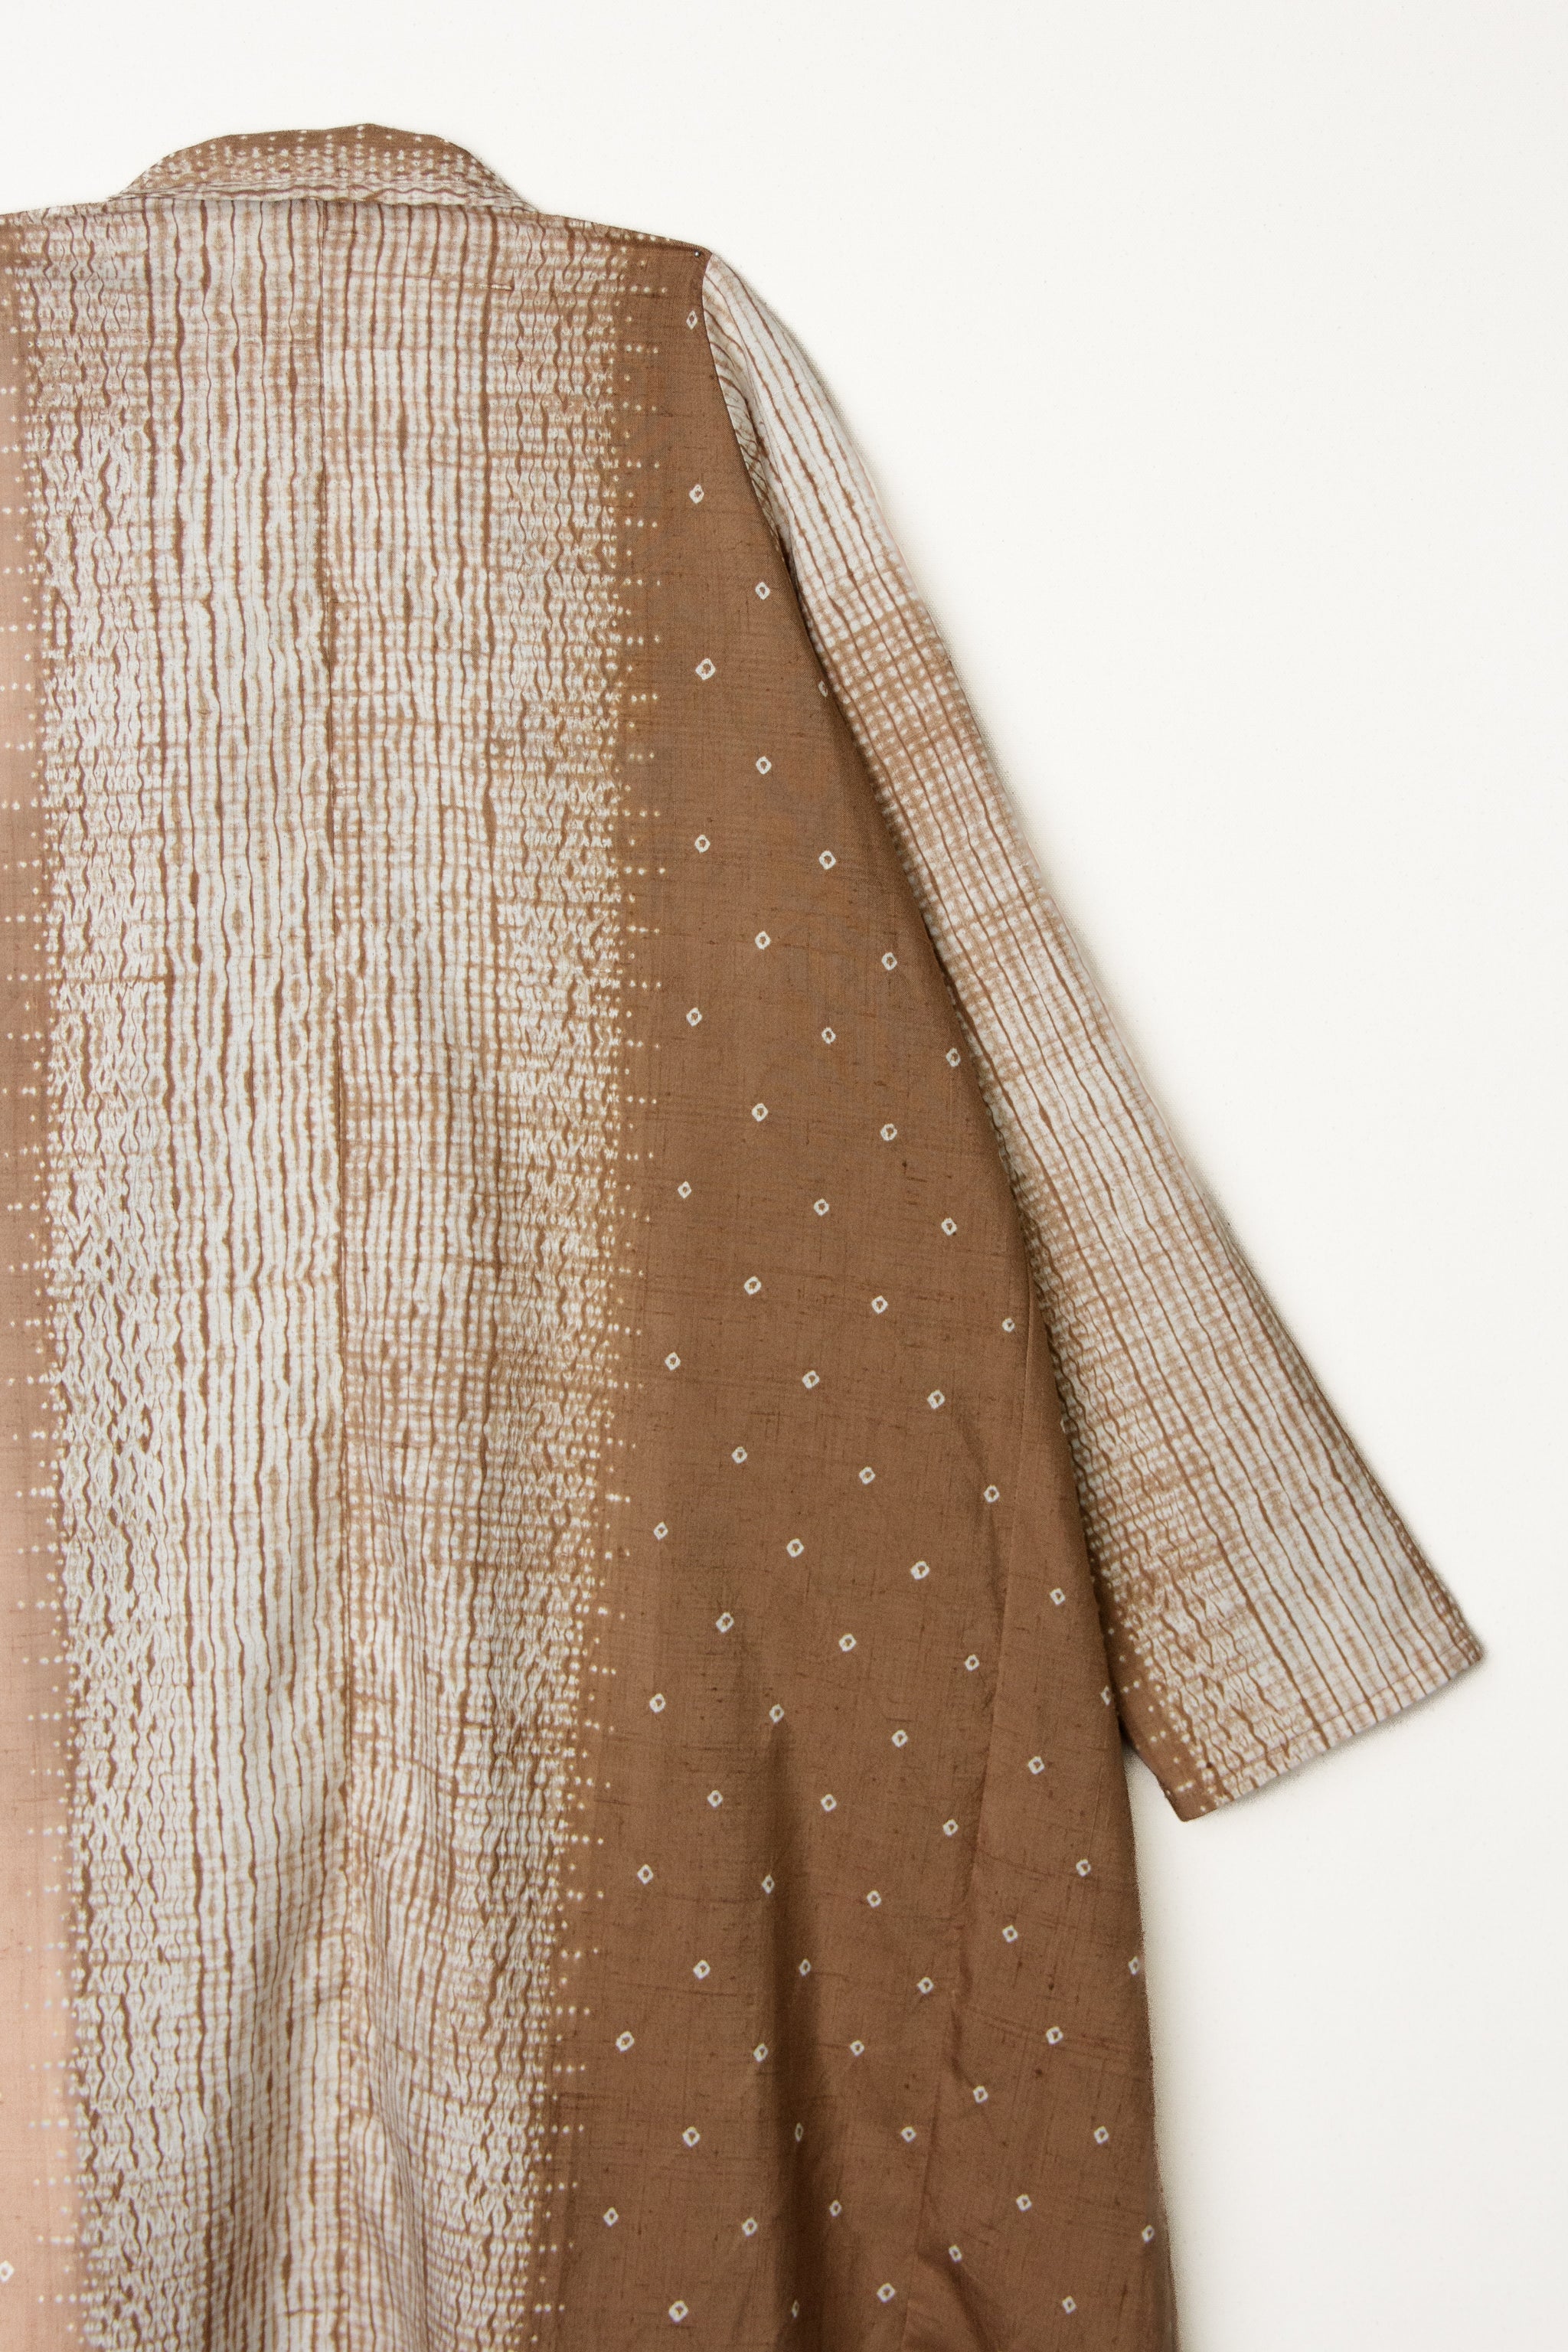 Reed Topper in Vintage Japanese Shibori Silk